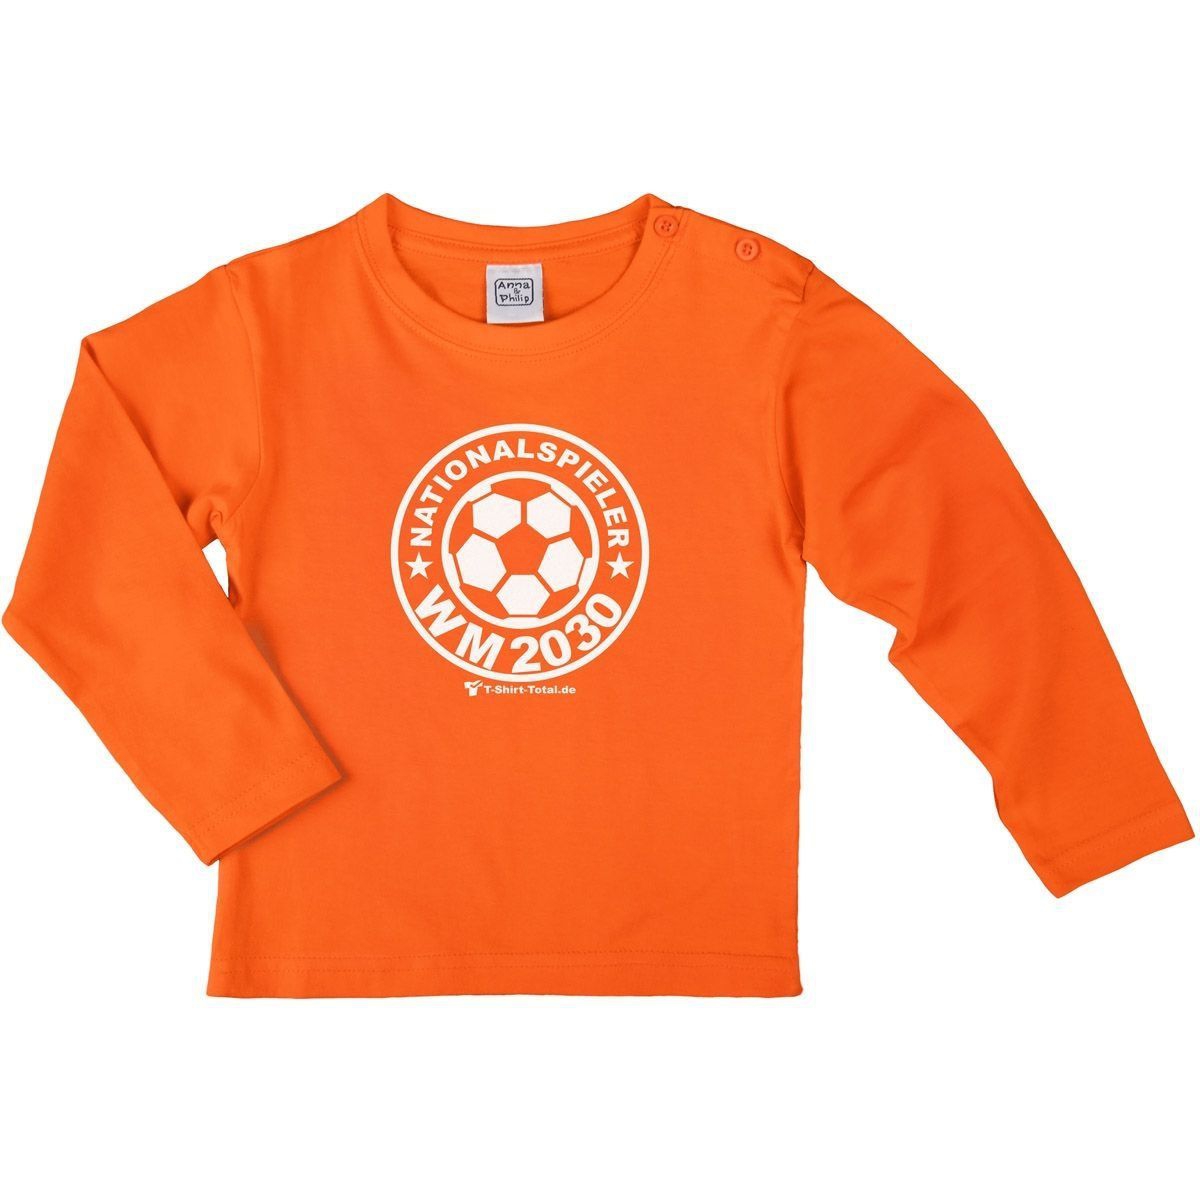 Nationalspieler 2042 Kinder Langarm Shirt orange 56 / 62